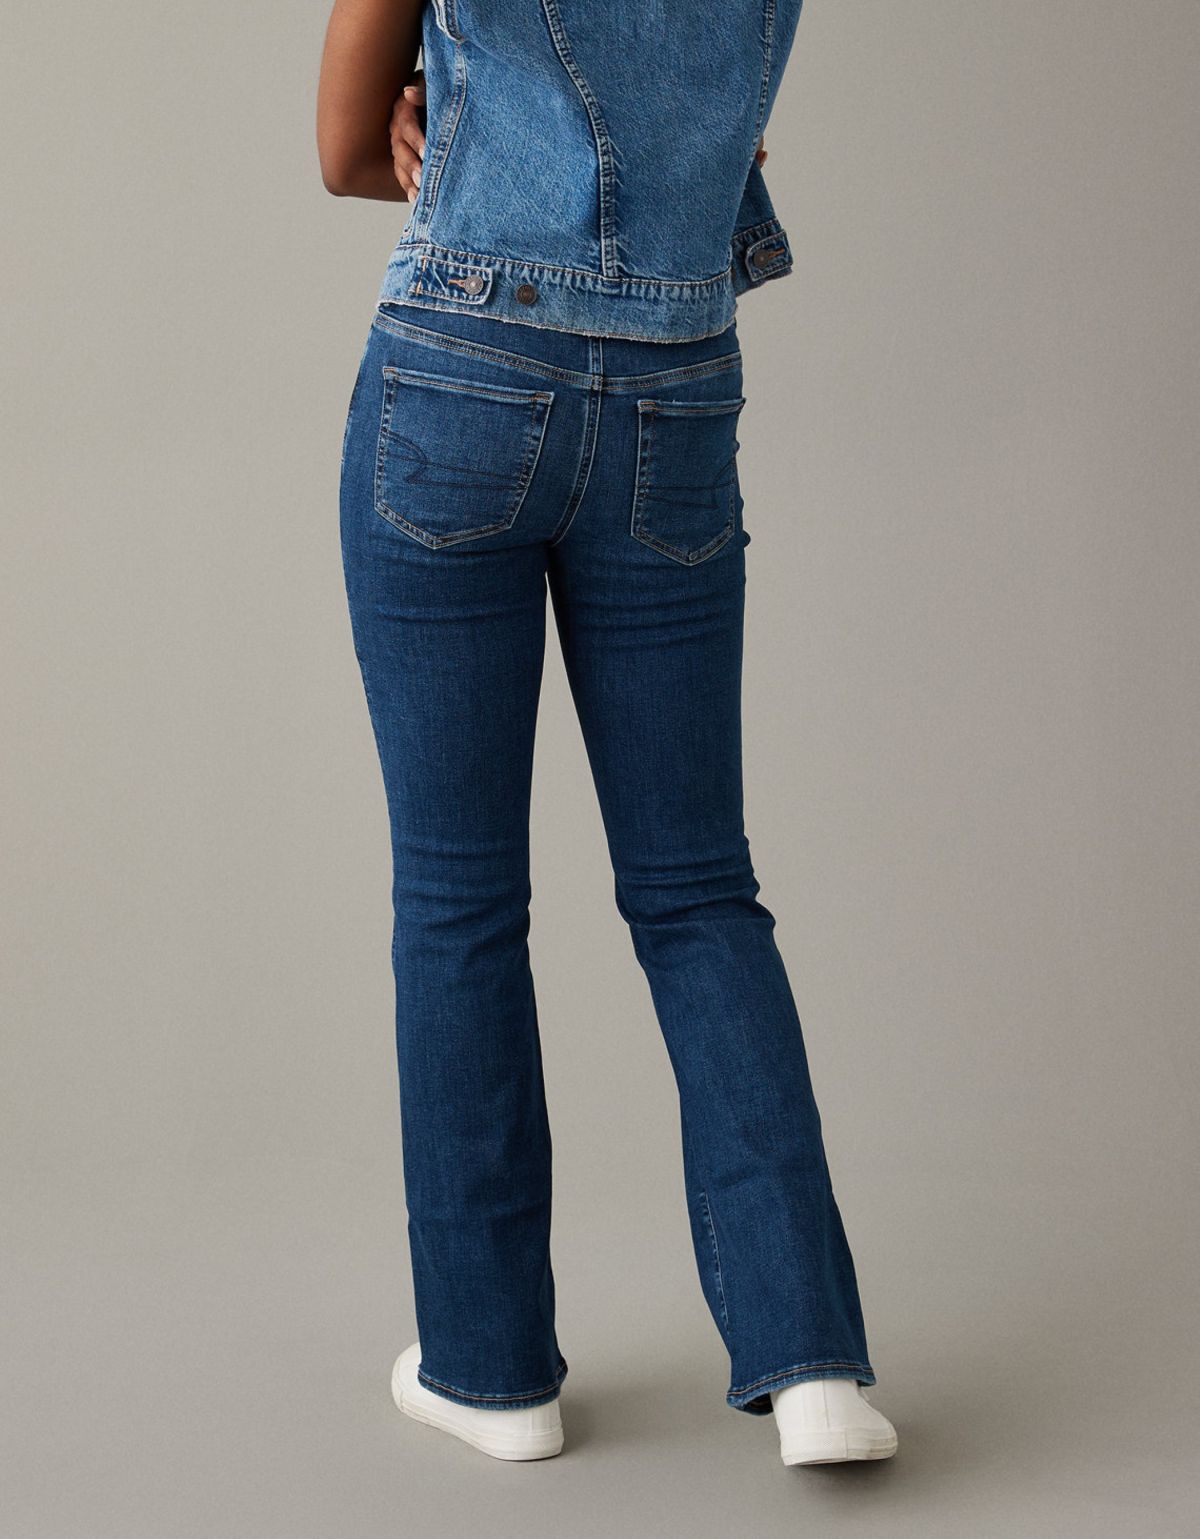  מכנסי ג'ינס בגזרת KICK BOOT של AMERICAN EAGLE